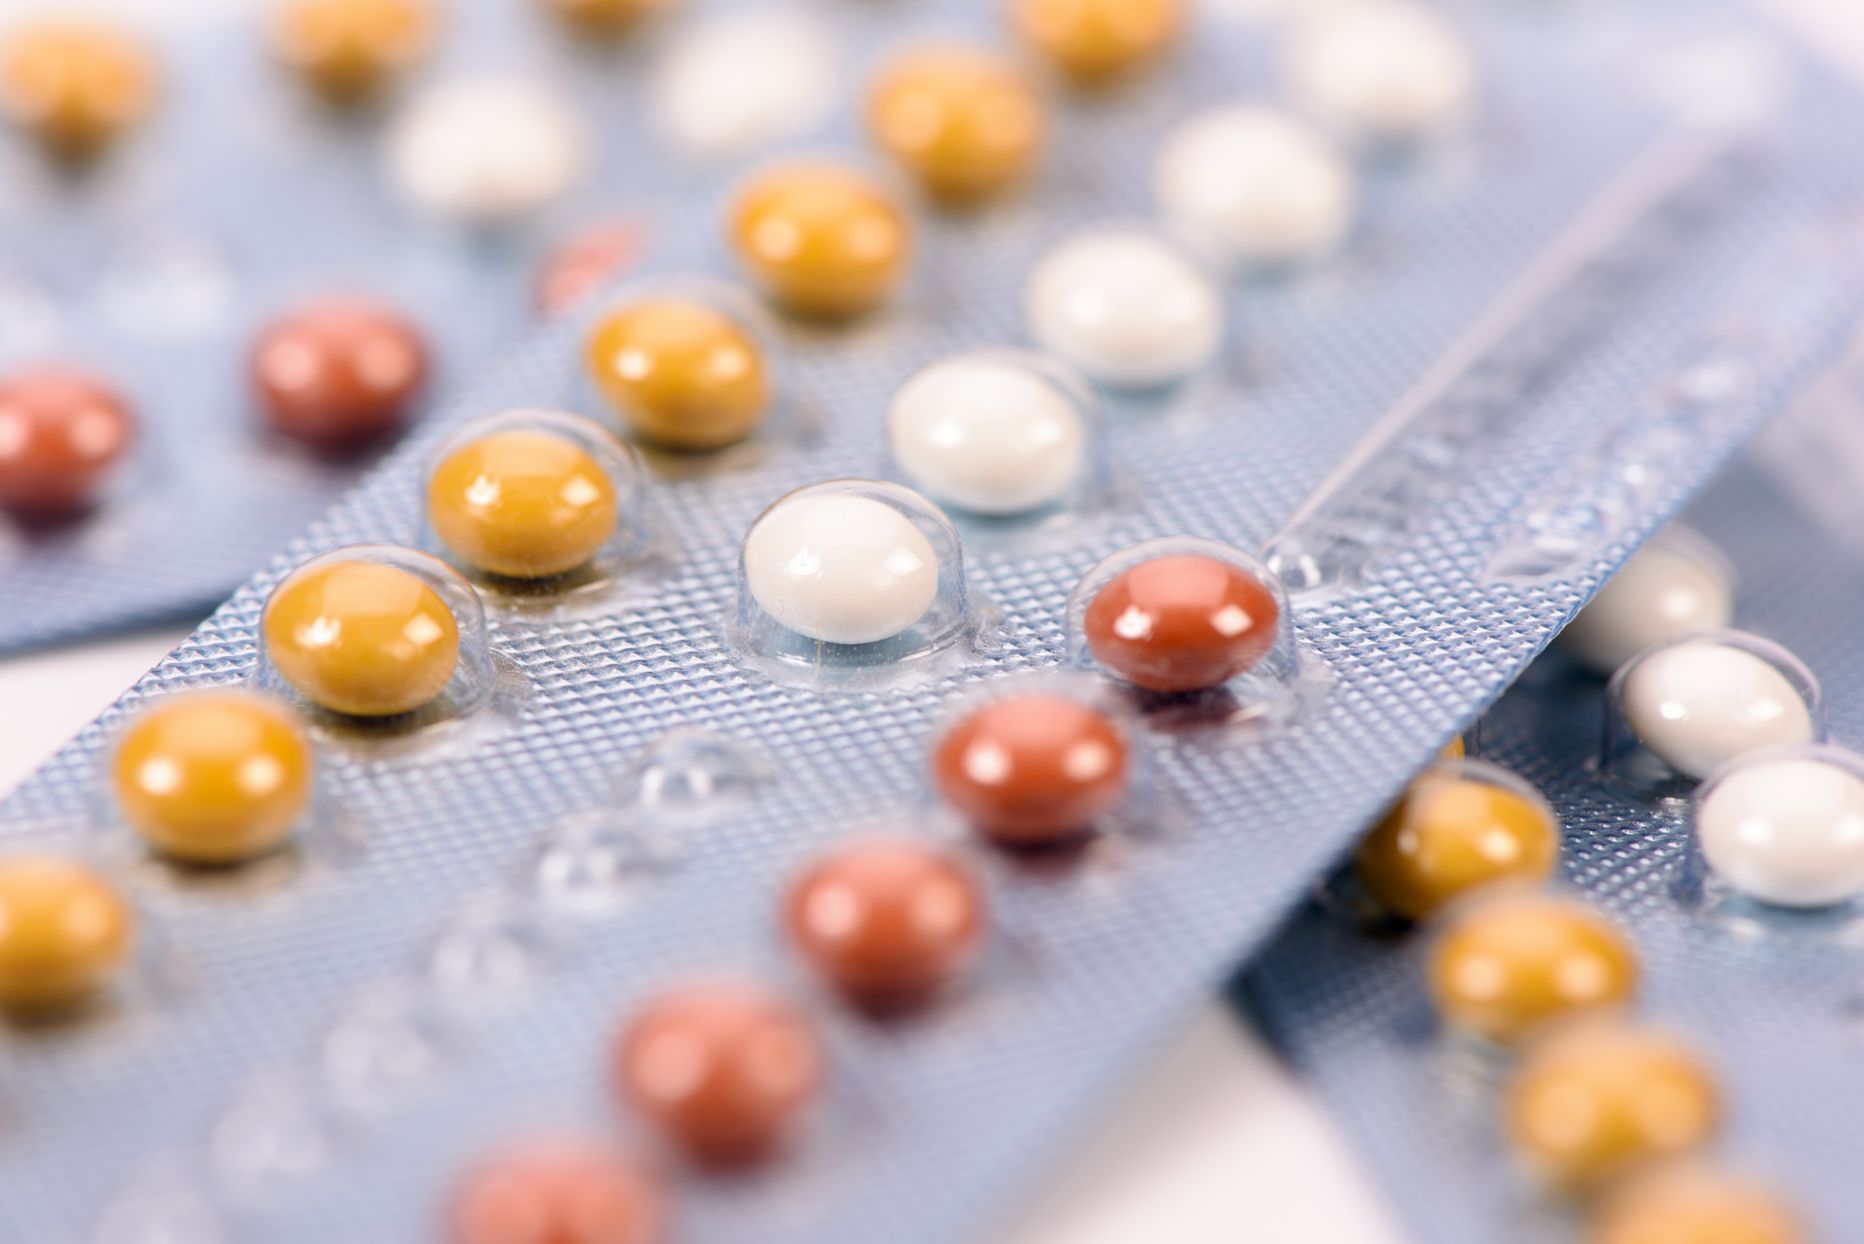 Rasestumisvastaste tablettide tõhususe tagamiseks tuleb tablette võtta korrapäraselt ning õigeaegselt pikendada retsepti.